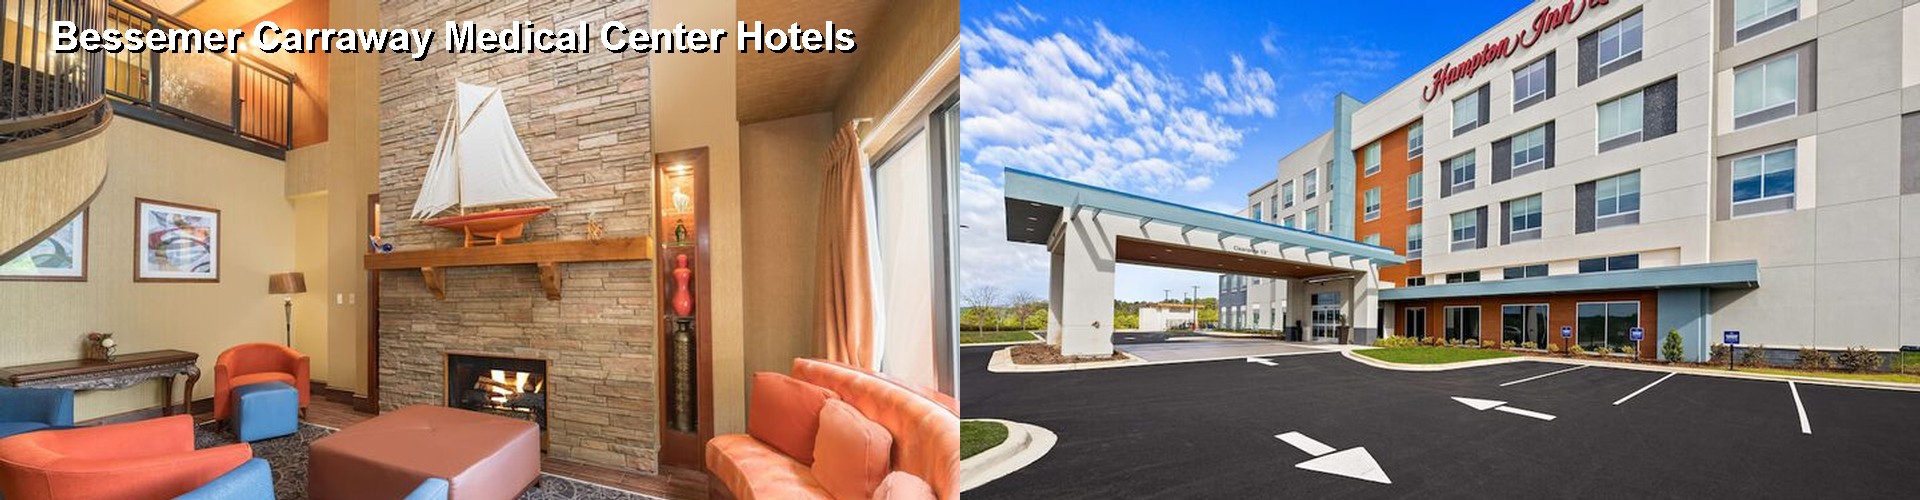 4 Best Hotels near Bessemer Carraway Medical Center